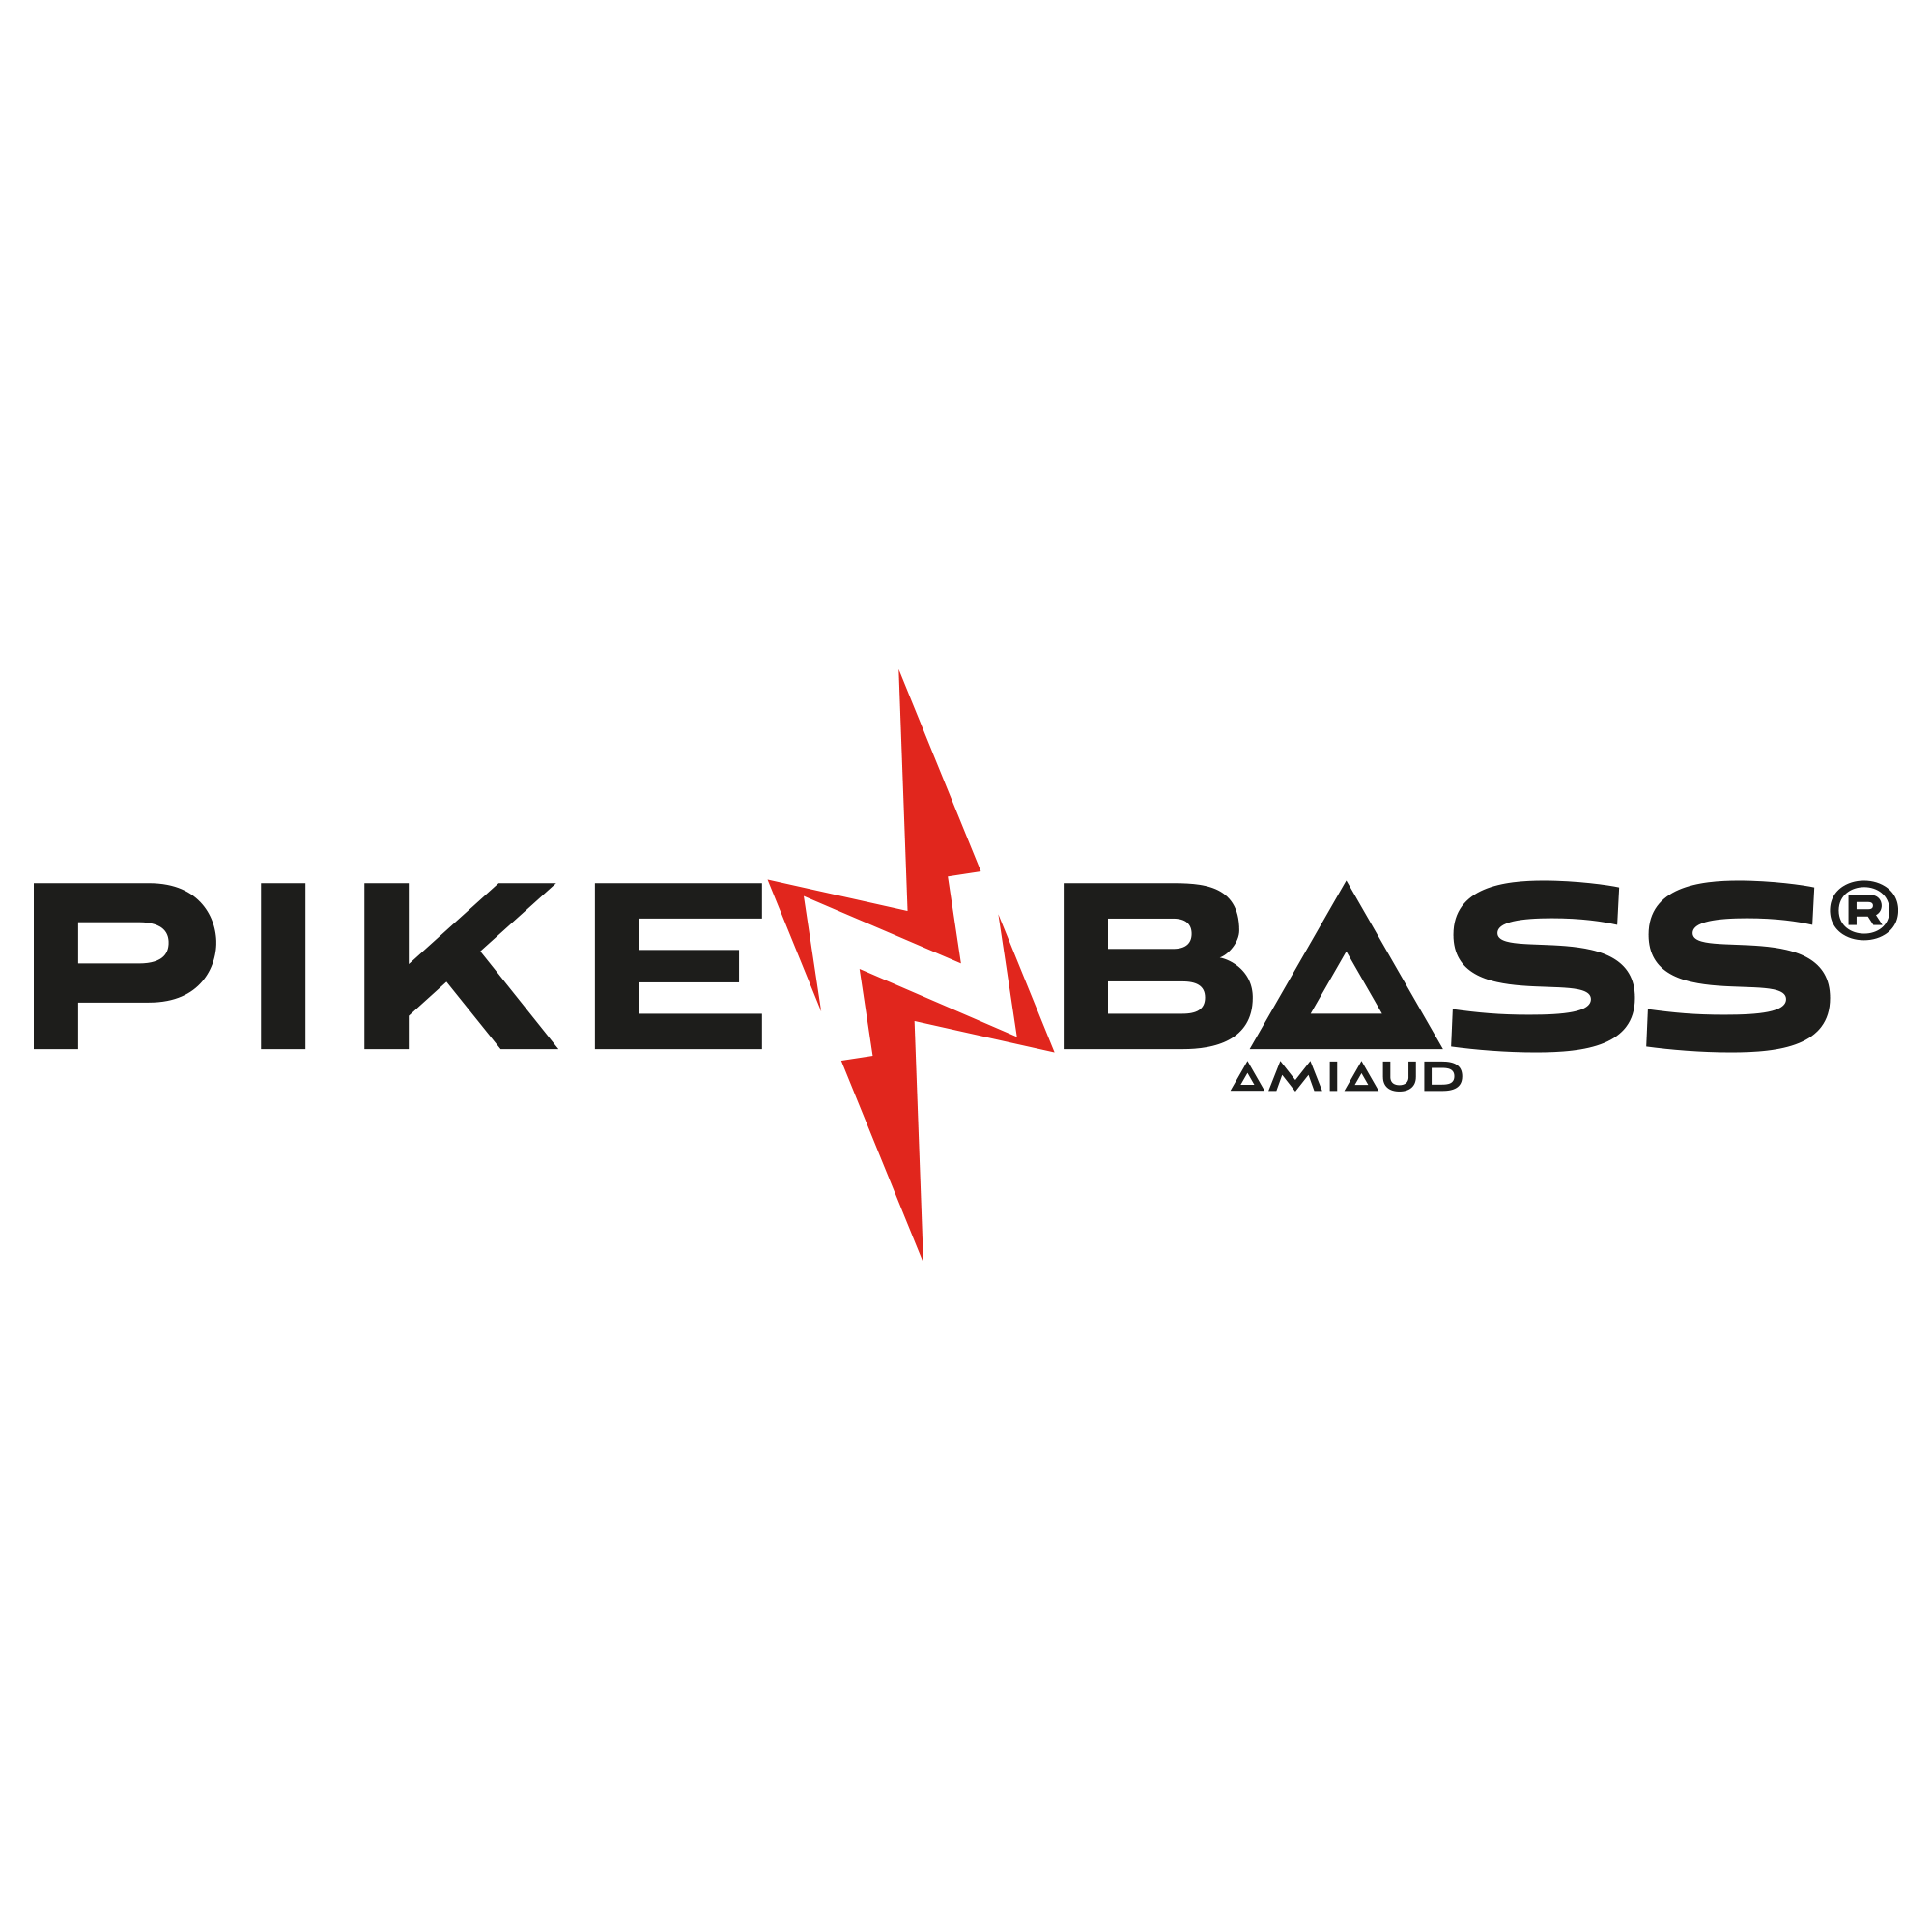 Pike'n Bass